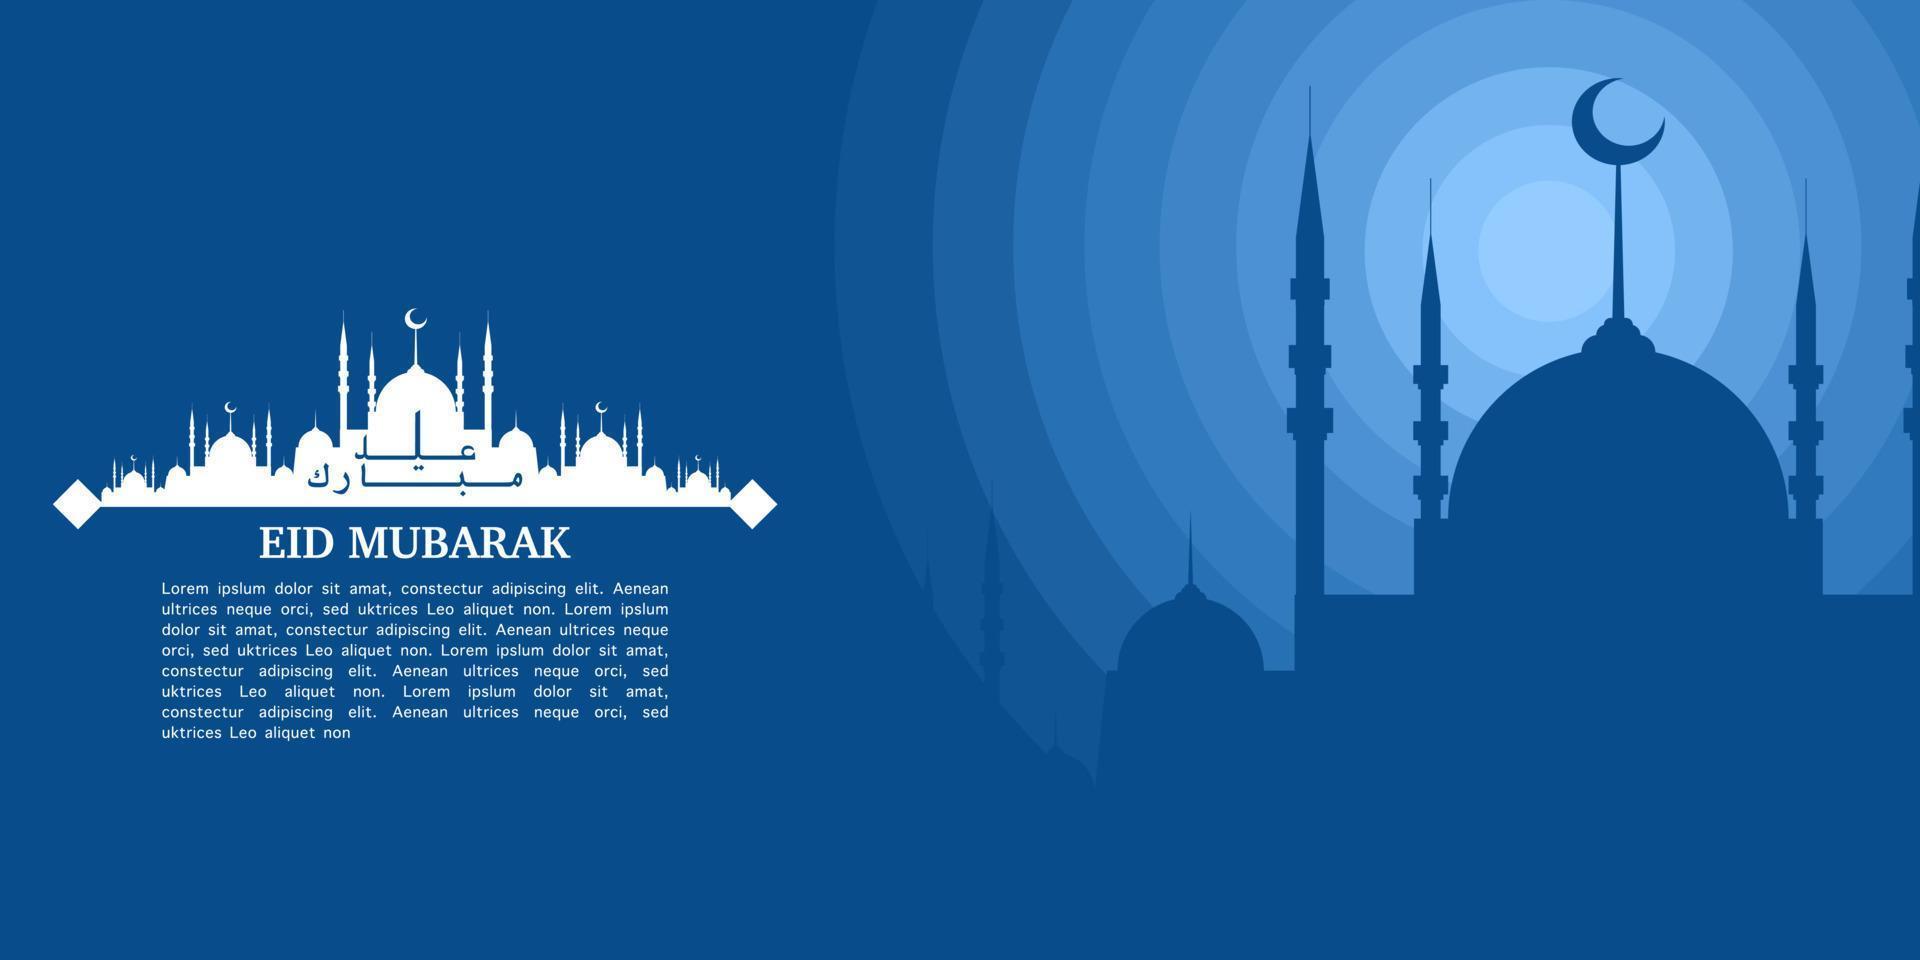 eid mubarak illustratie met moskee silhouet Bij nacht, eid groet banier, uitnodiging sjabloon, sociaal media, enz. eid mubarak themed vlak vector illustratie.